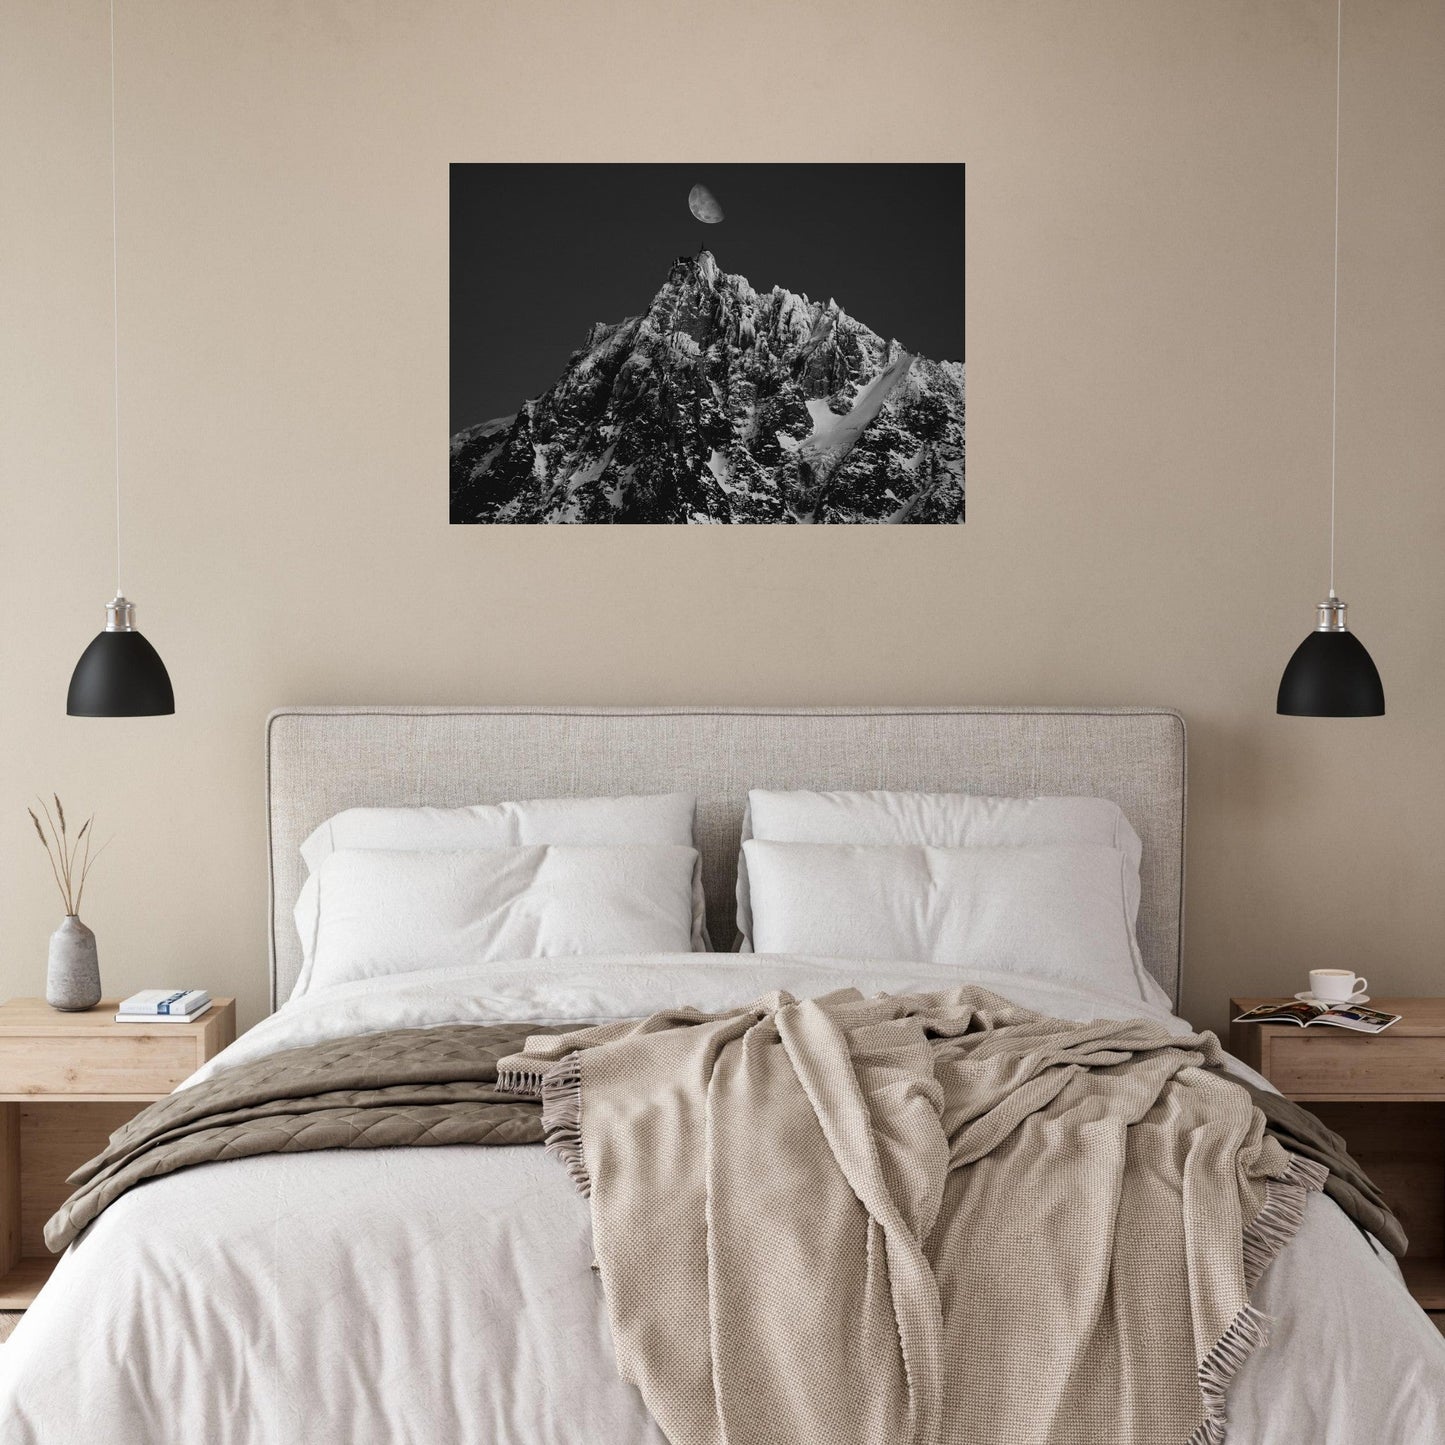 Vente Photo de l'Aiguille du Midi et de la lune - Noir & Blanc - Tableau photo alu montagne